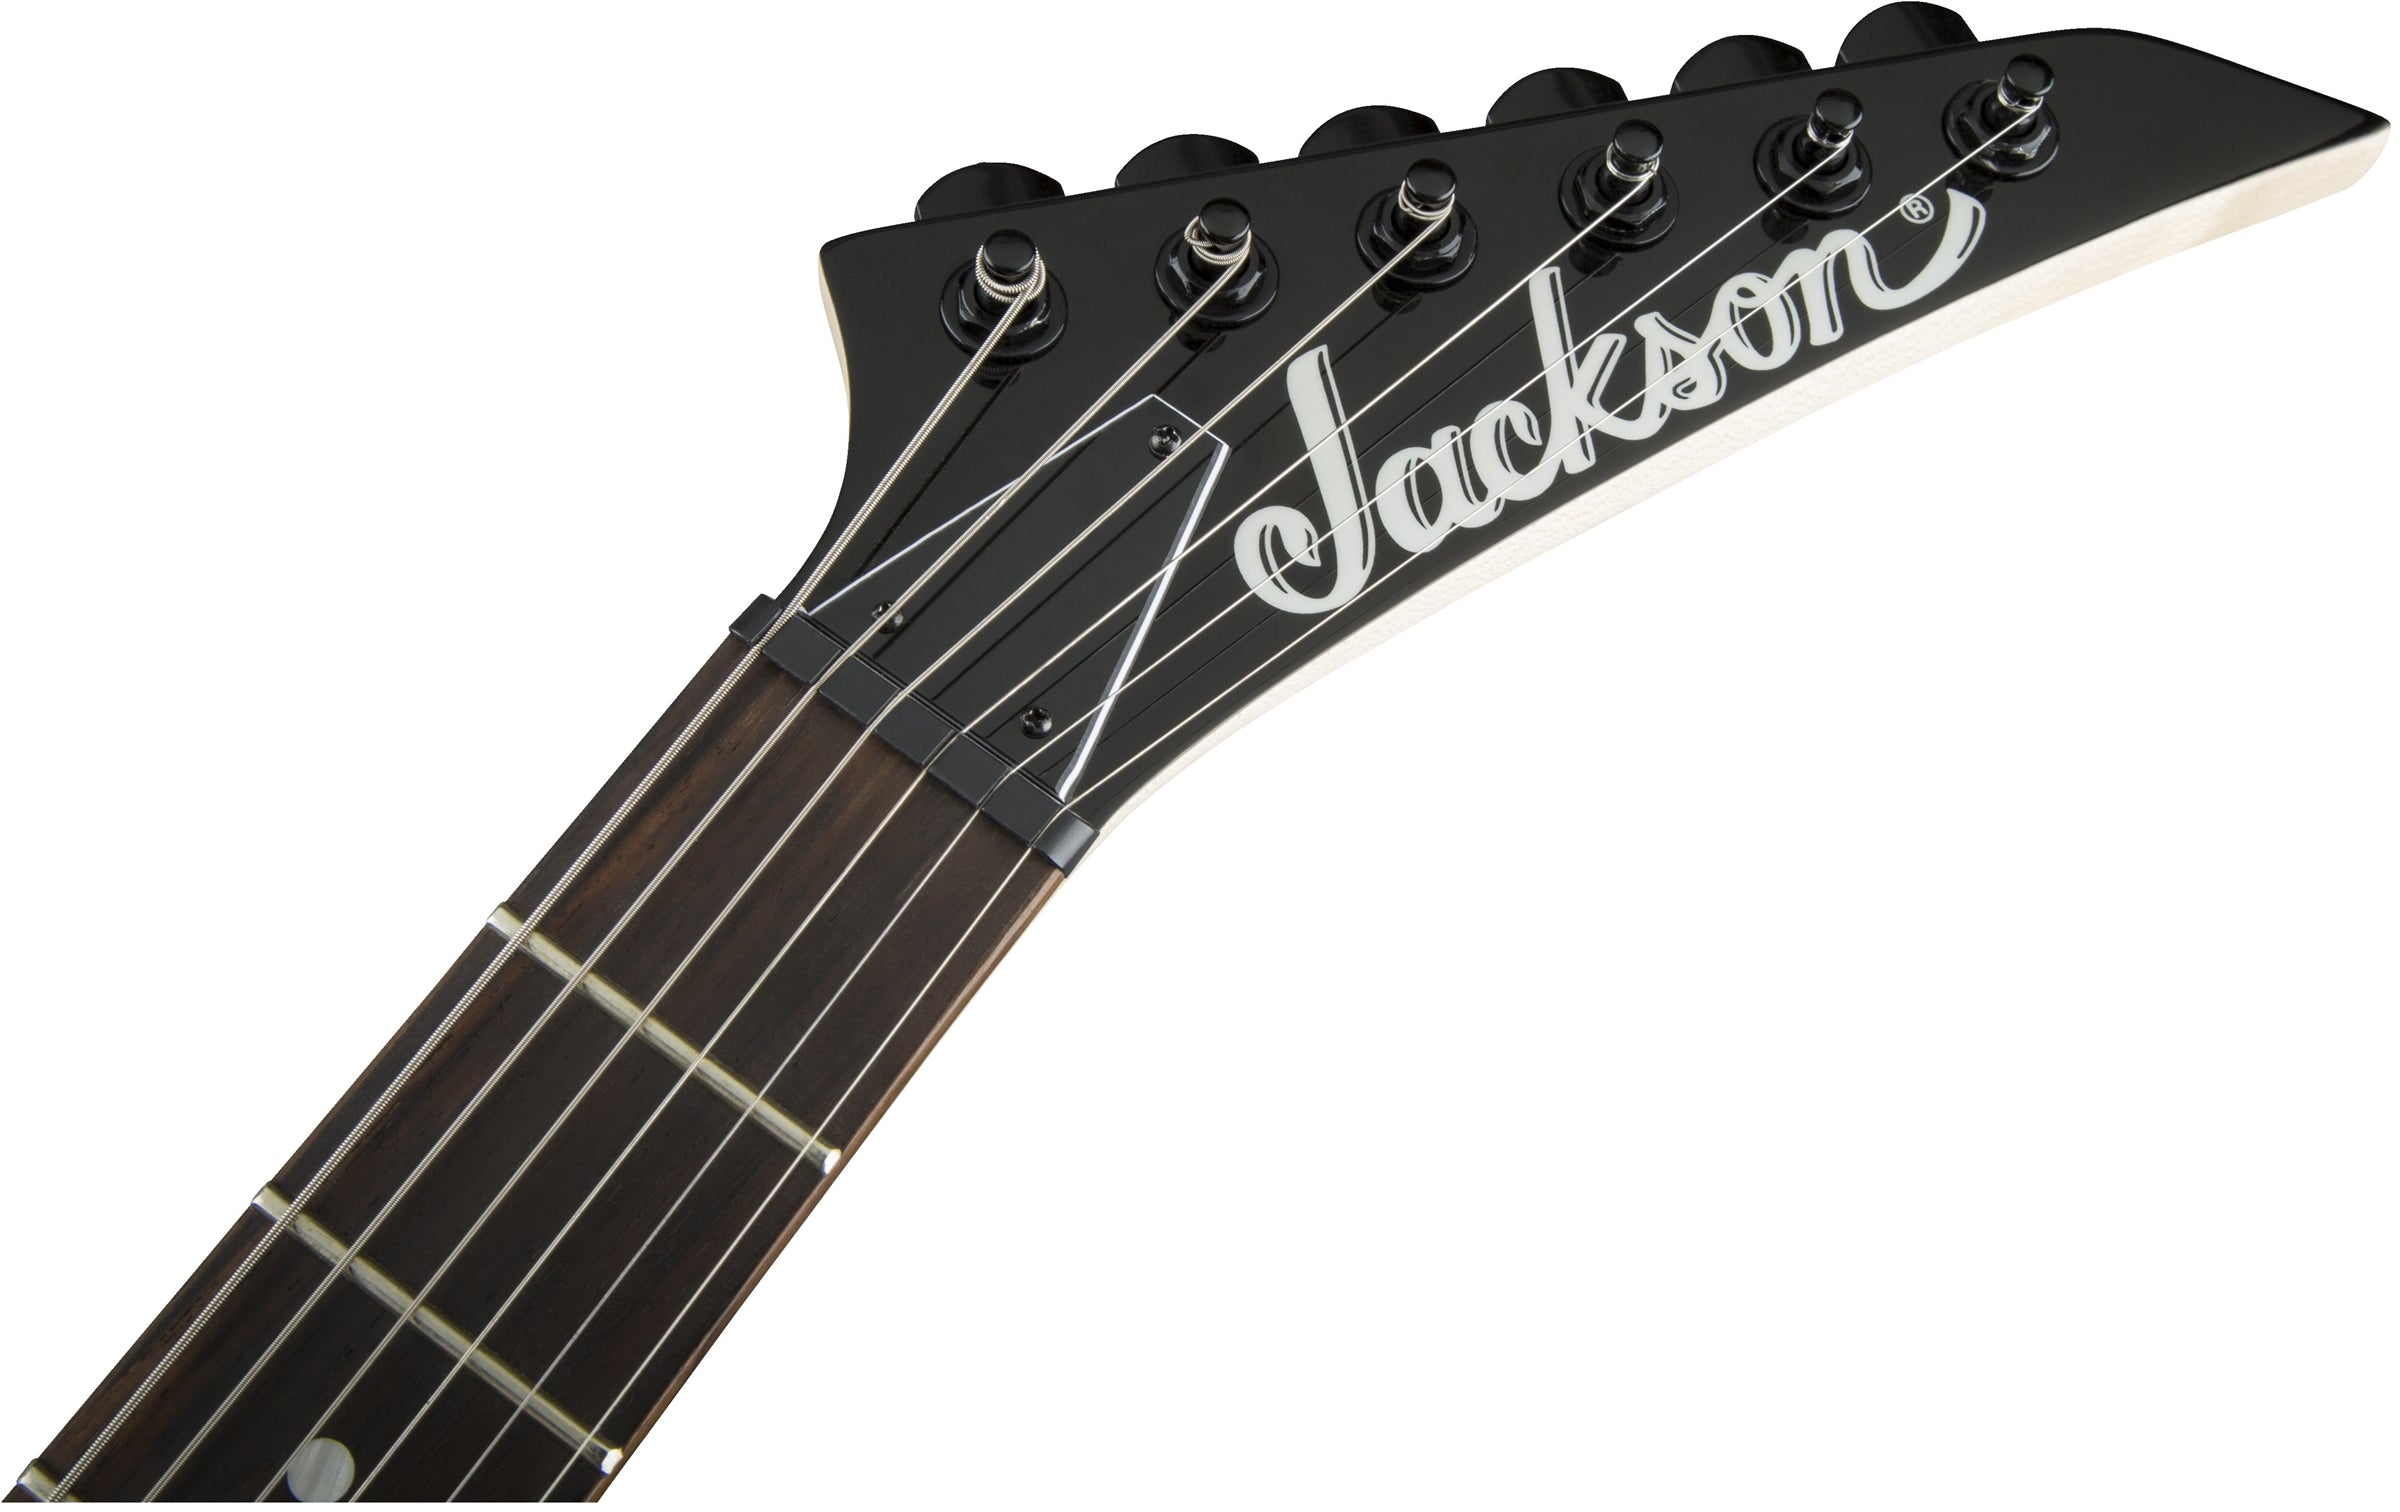 Jackson Dinky JS12 Electric Guitar - Metallic Blue